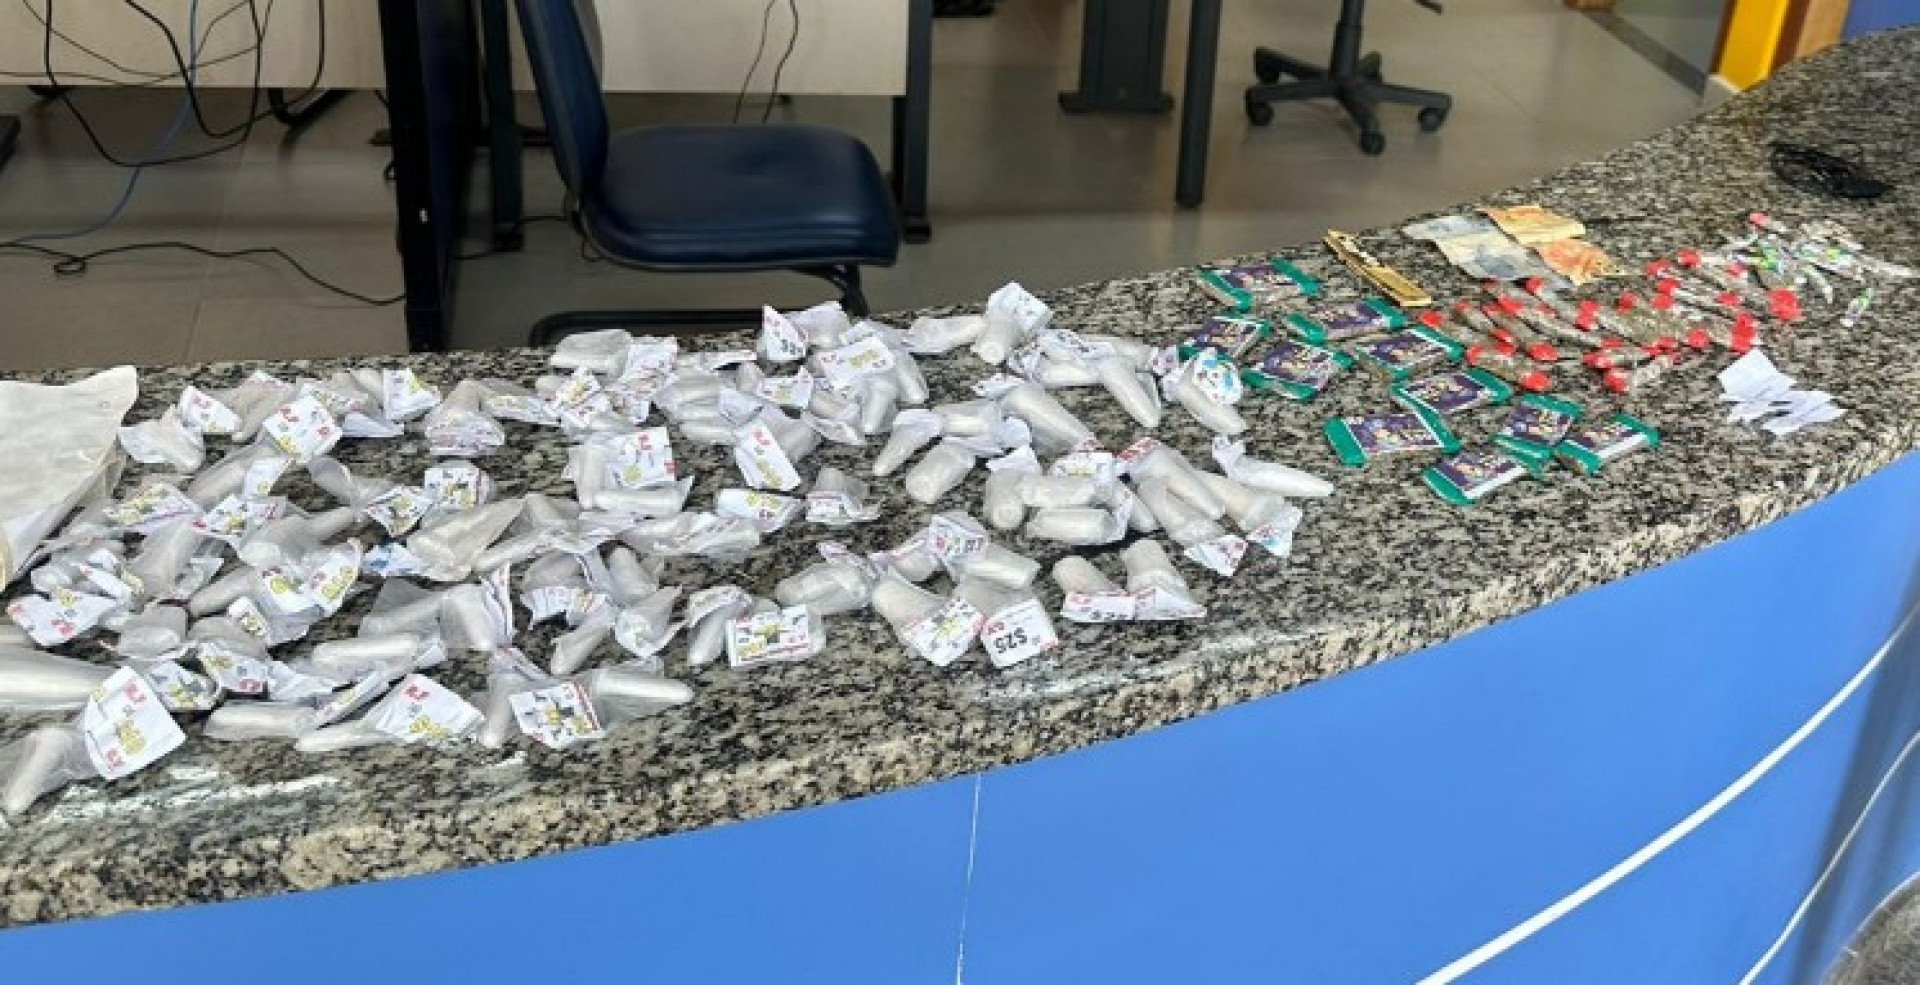  96 pinos de cocaína, 50 buchas de maconha e R$ 24 reais em espécie. - Divulgação/ PM